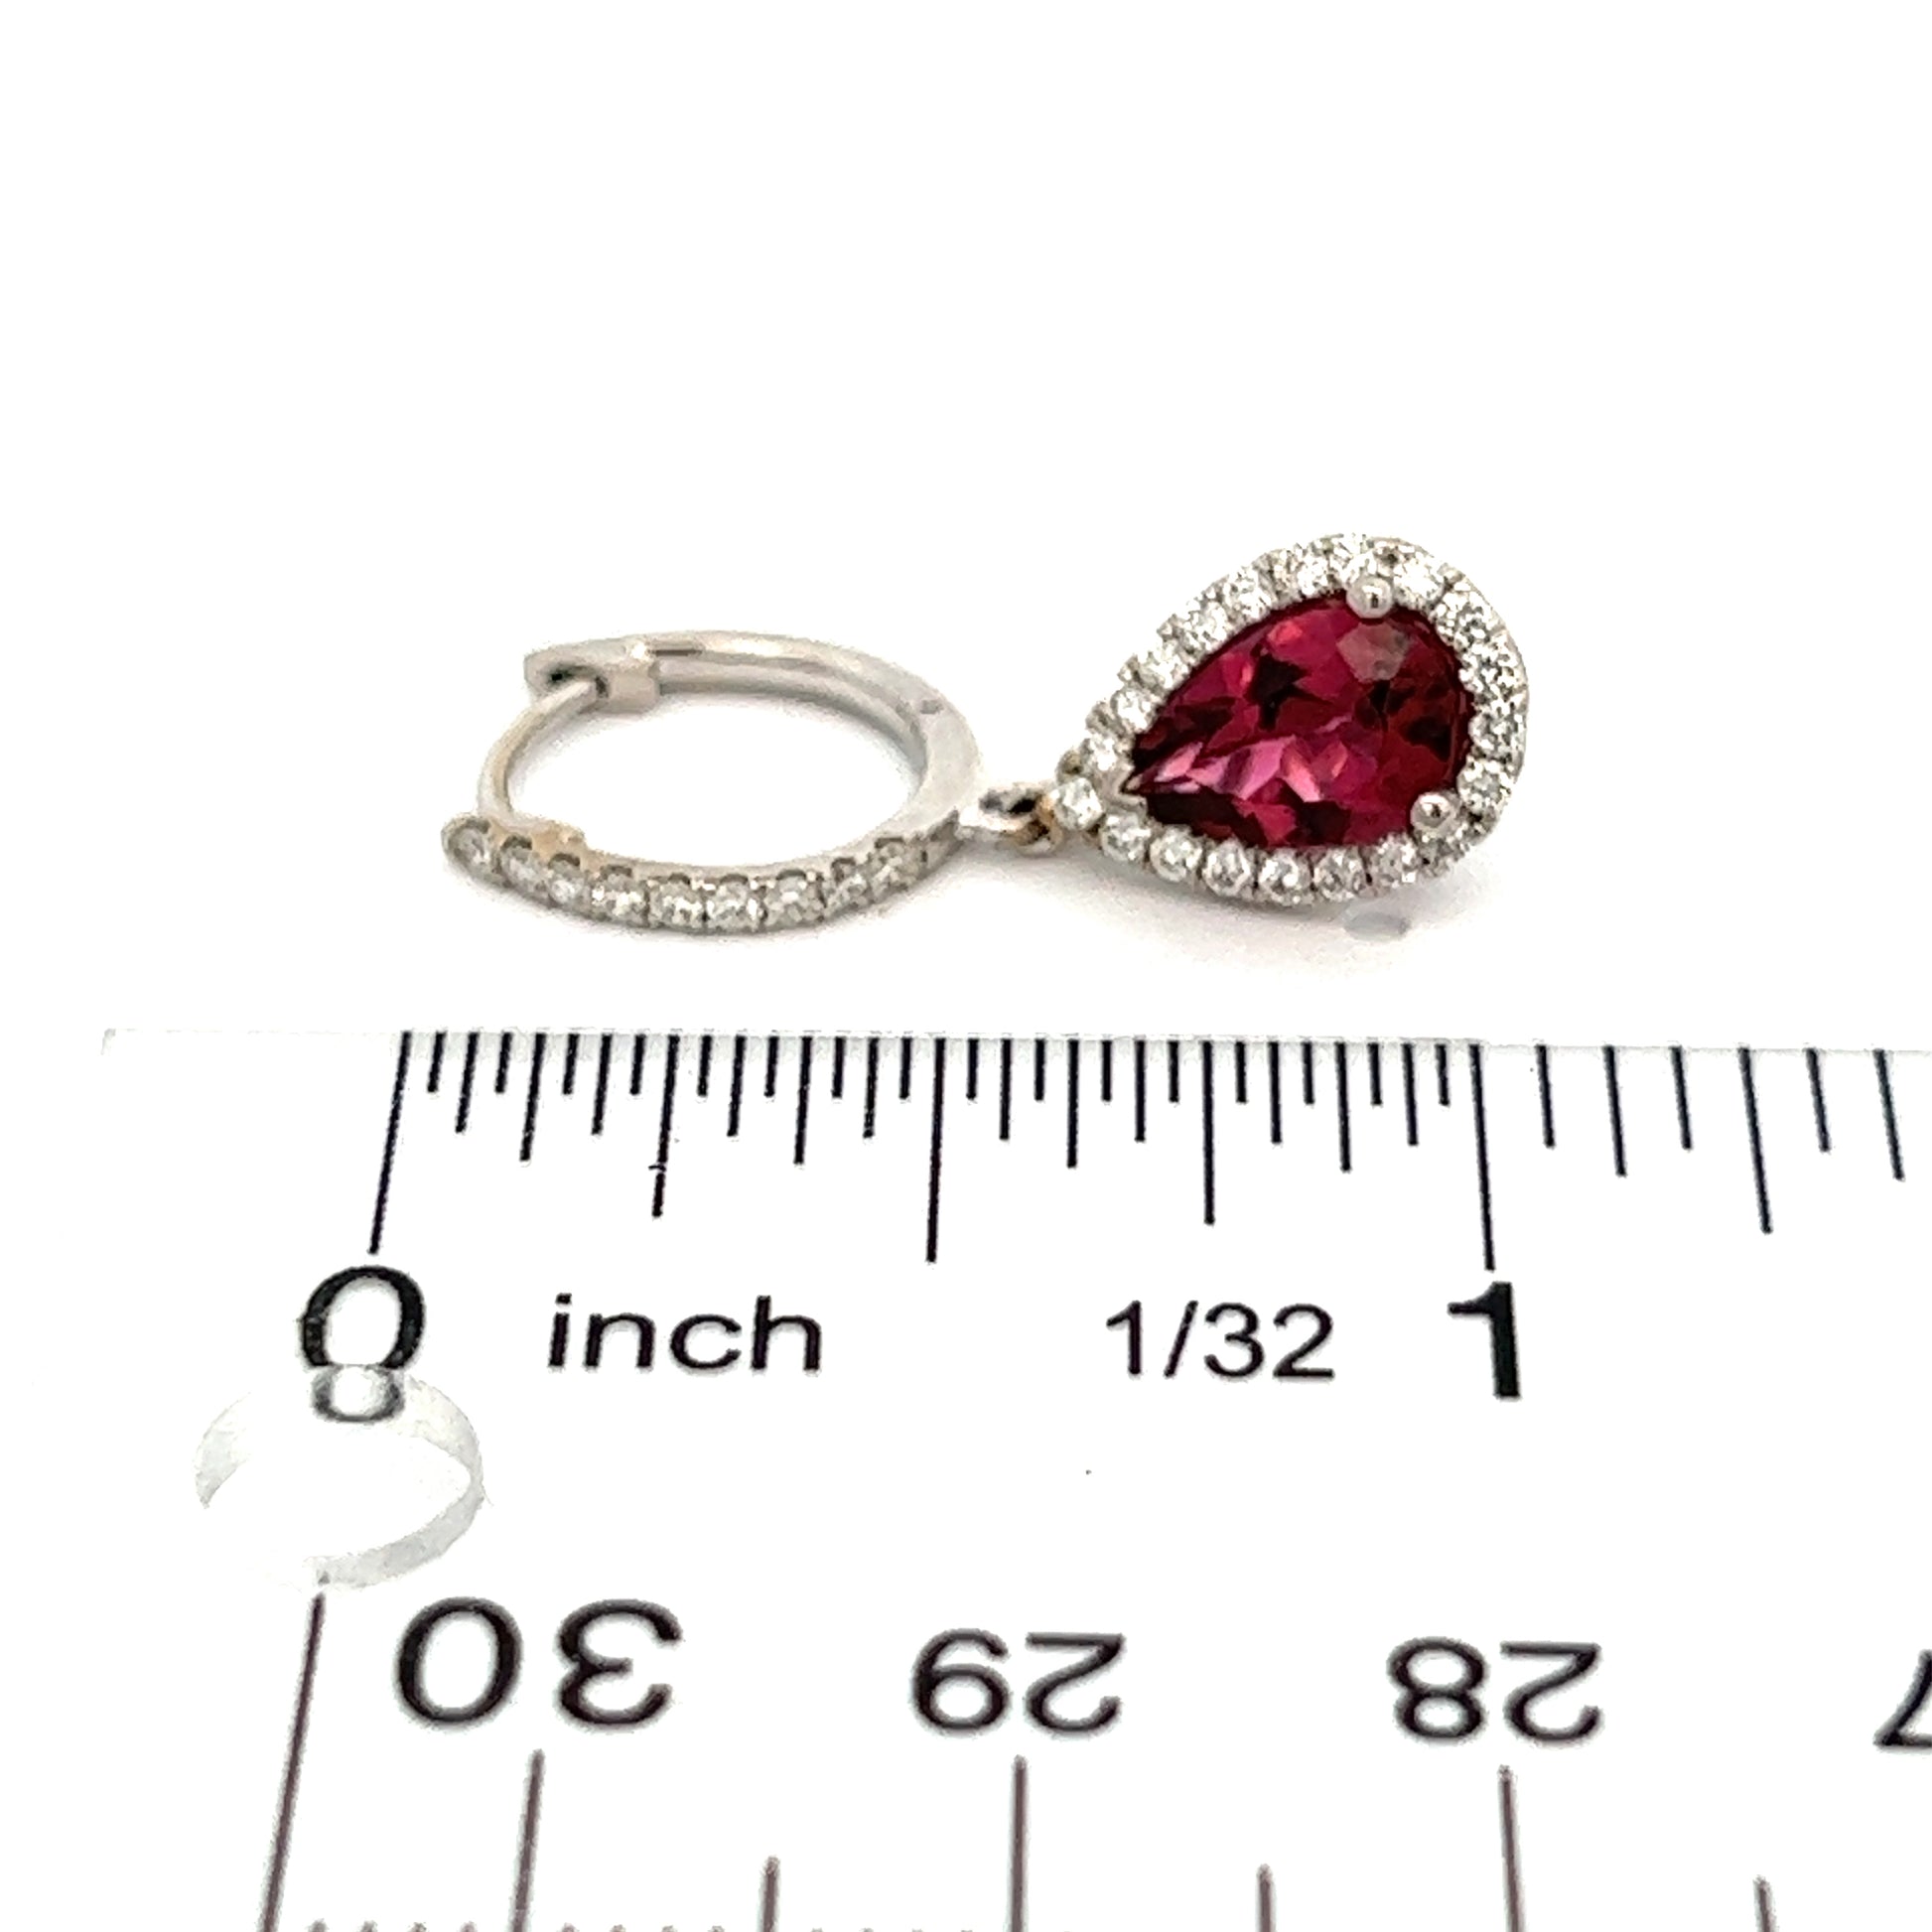 Diamond Rubellite Tourmaline Drop Earrings 18k W Gold 2.93 TCW Certified $5,950 210764 - Certified Fine Jewelry